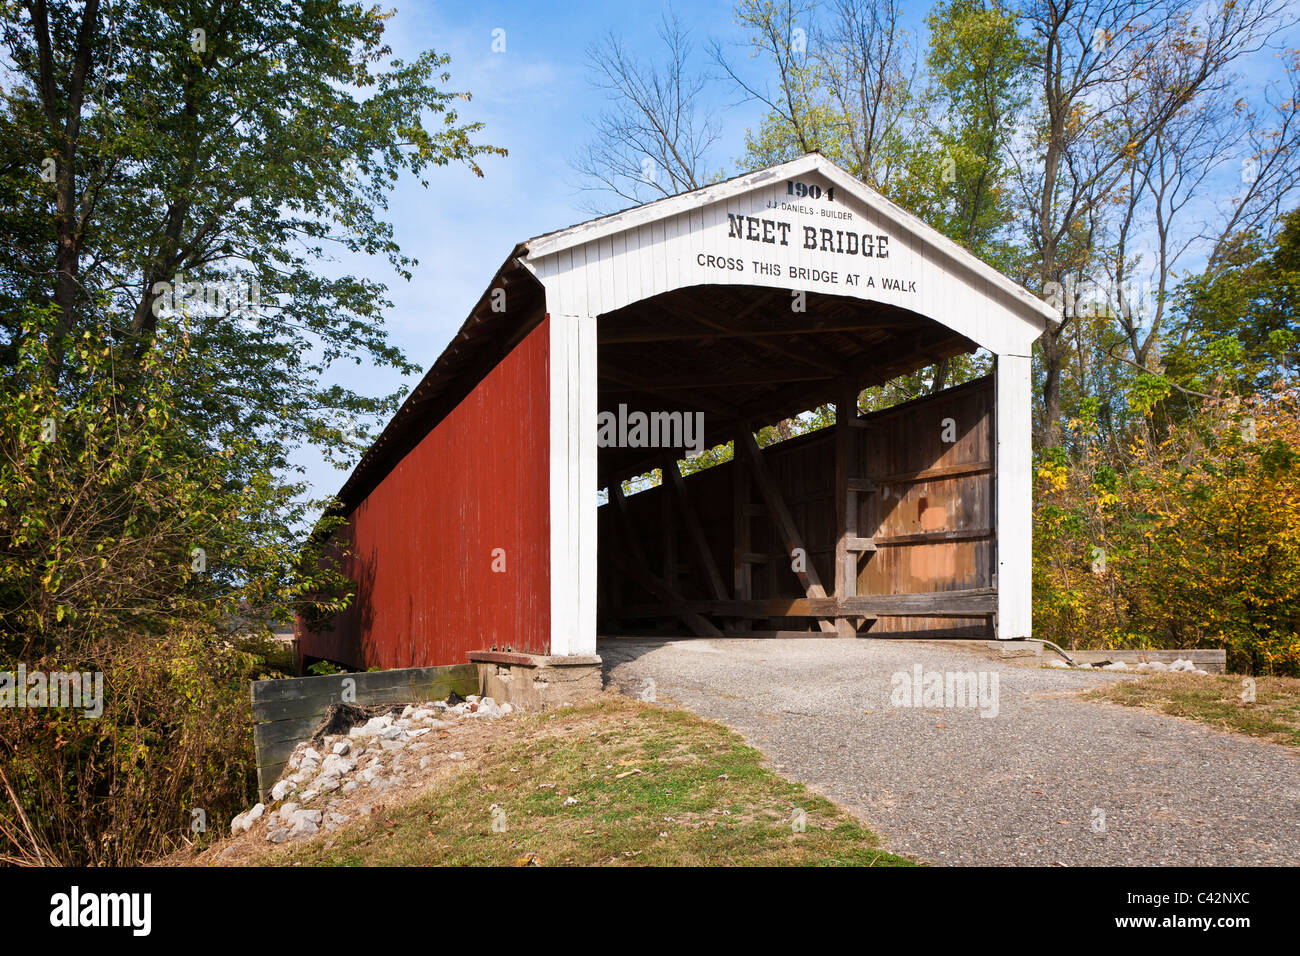 NEET Covered Bridge, erbaut im Jahre 1904 erstreckt sich über den kleinen Waschbär-Bach in der Nähe von Rockville in Parke County, Indiana, USA Stockfoto